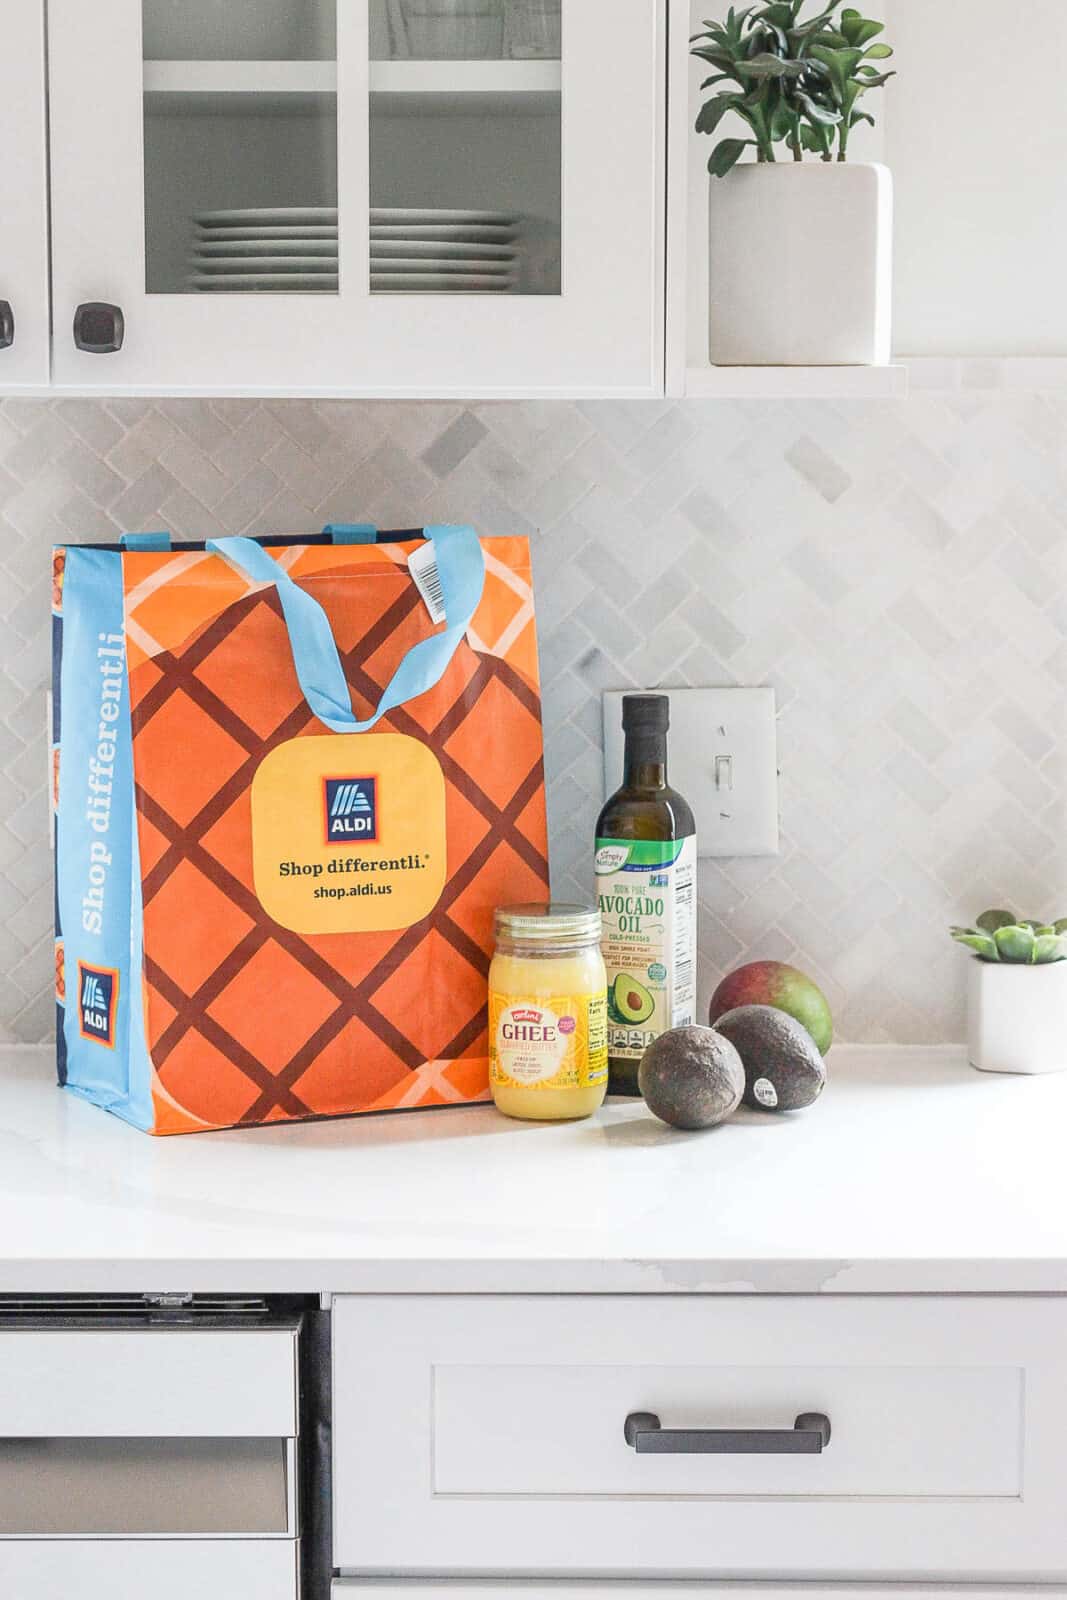 Aldi shopping bag, avocado oil, ghee, avocados, and a mango on the counter.